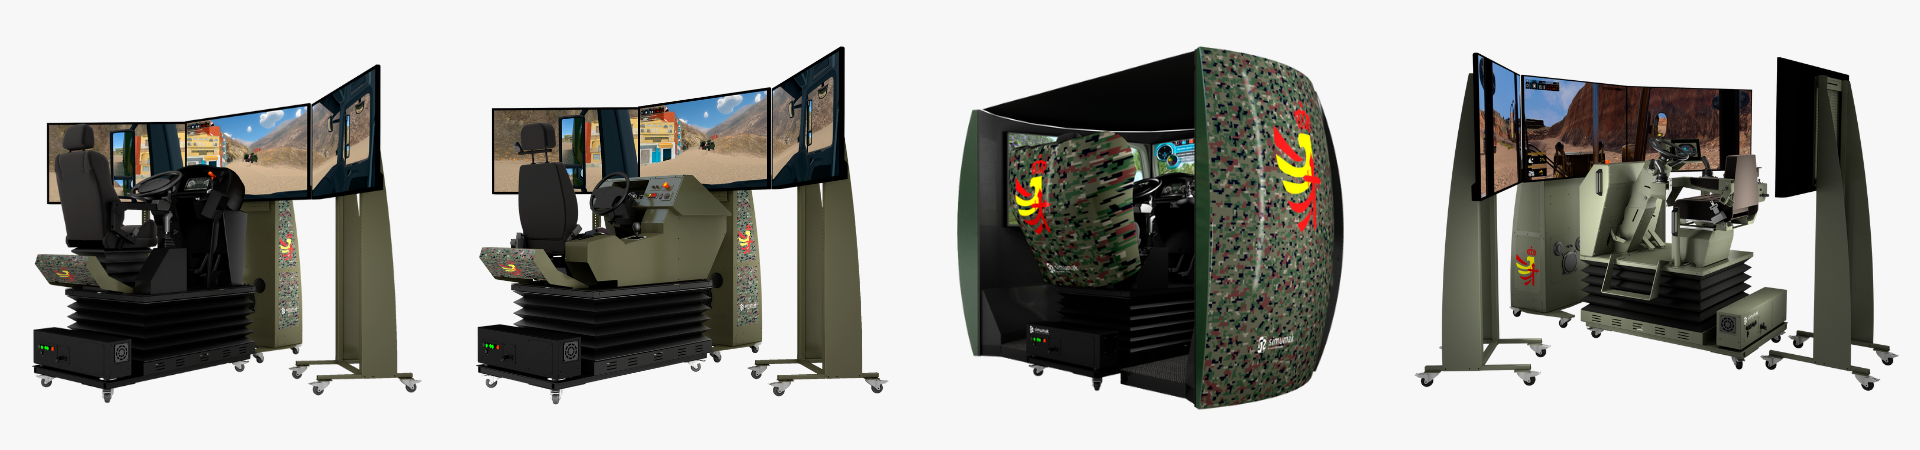 Defense simulators hardware